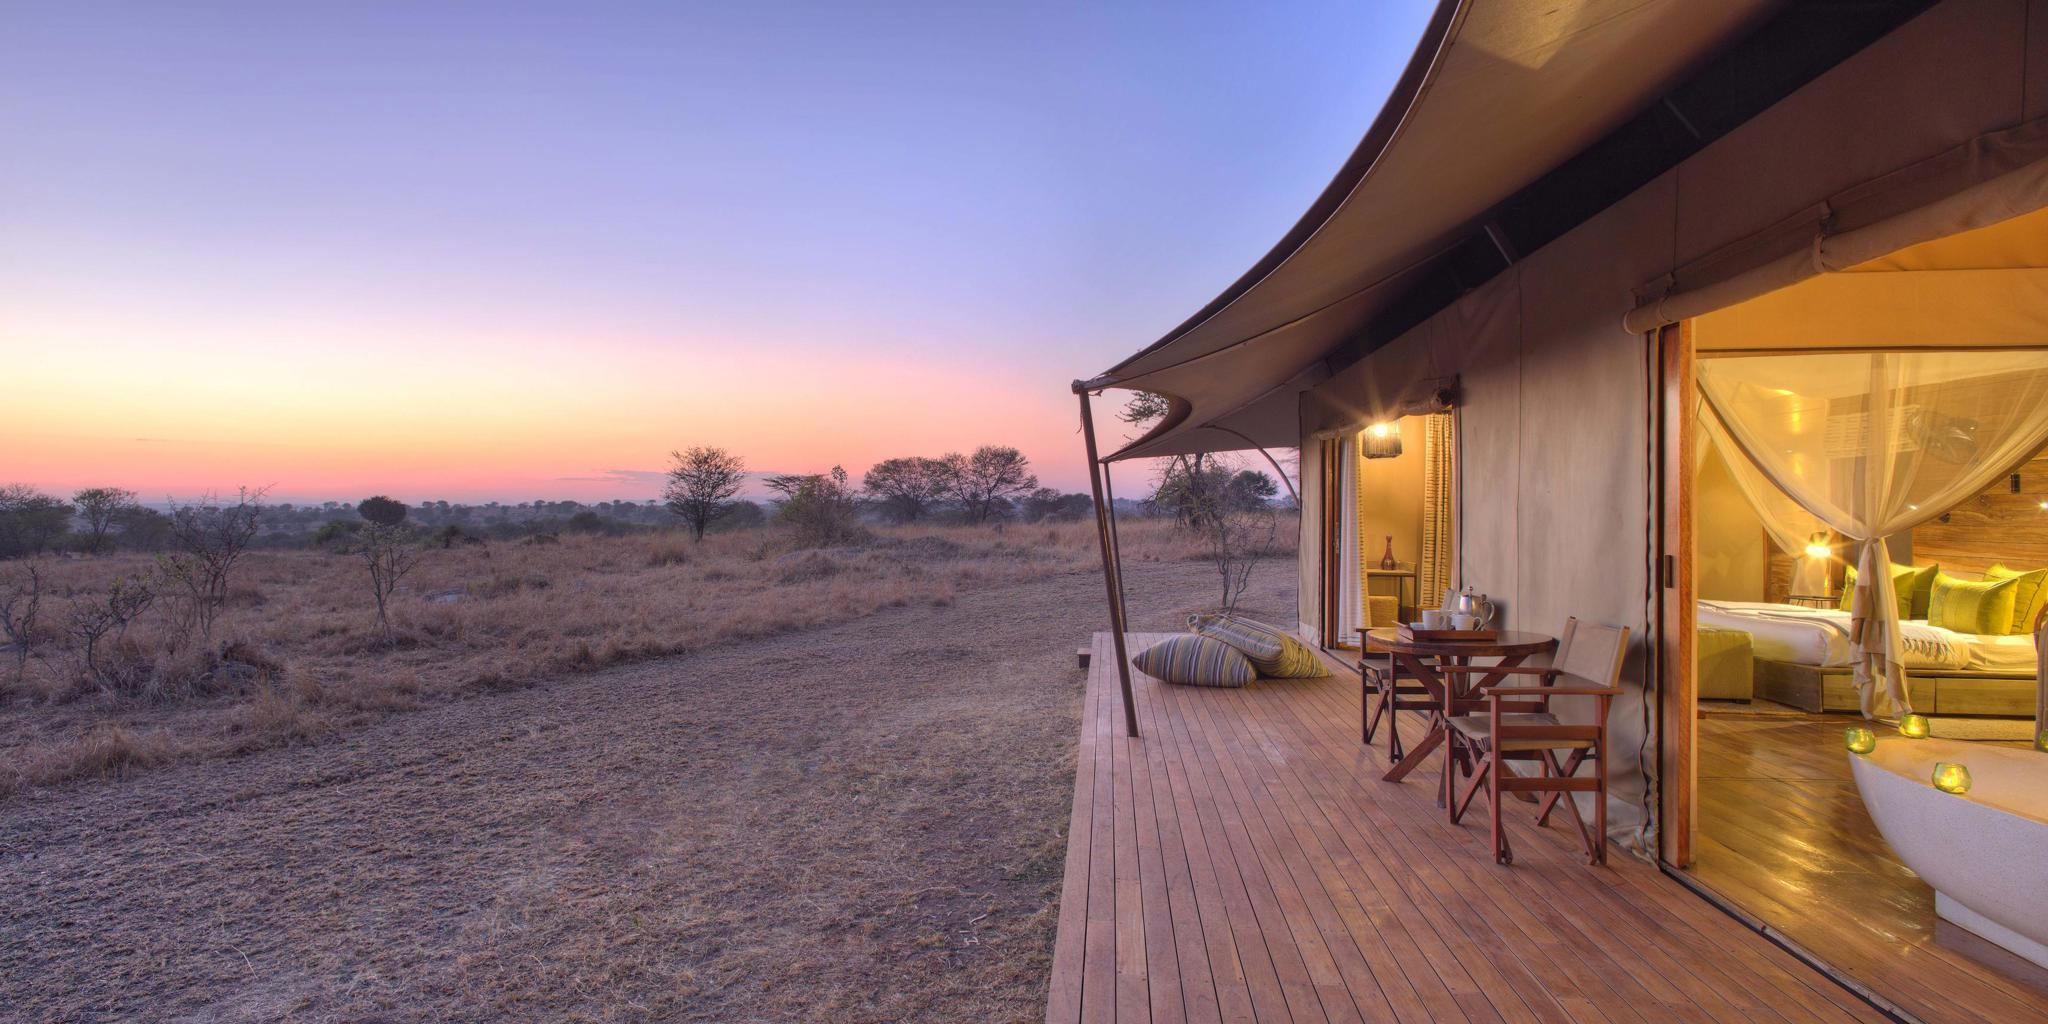 sunset room, sayari camp, the serengeti, tanzania